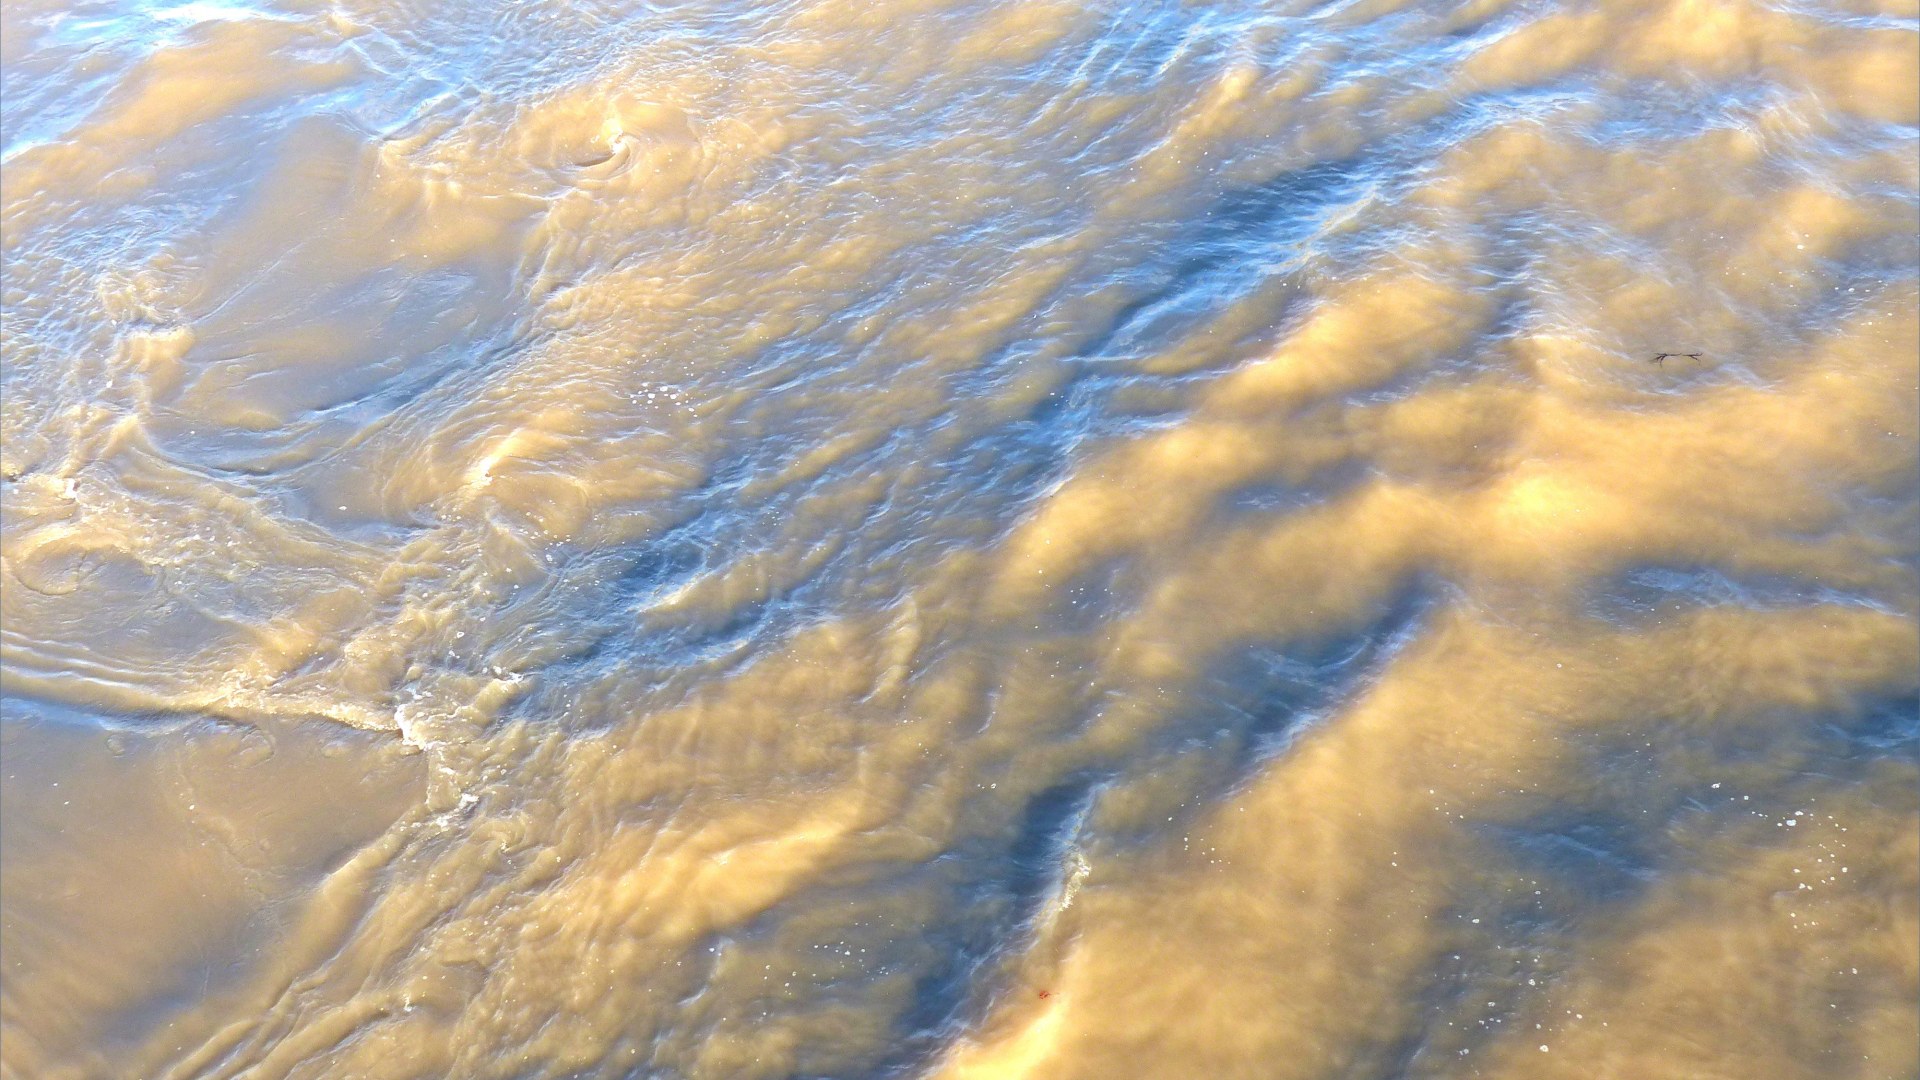 Swirling river water immediately water downstream of a bridge